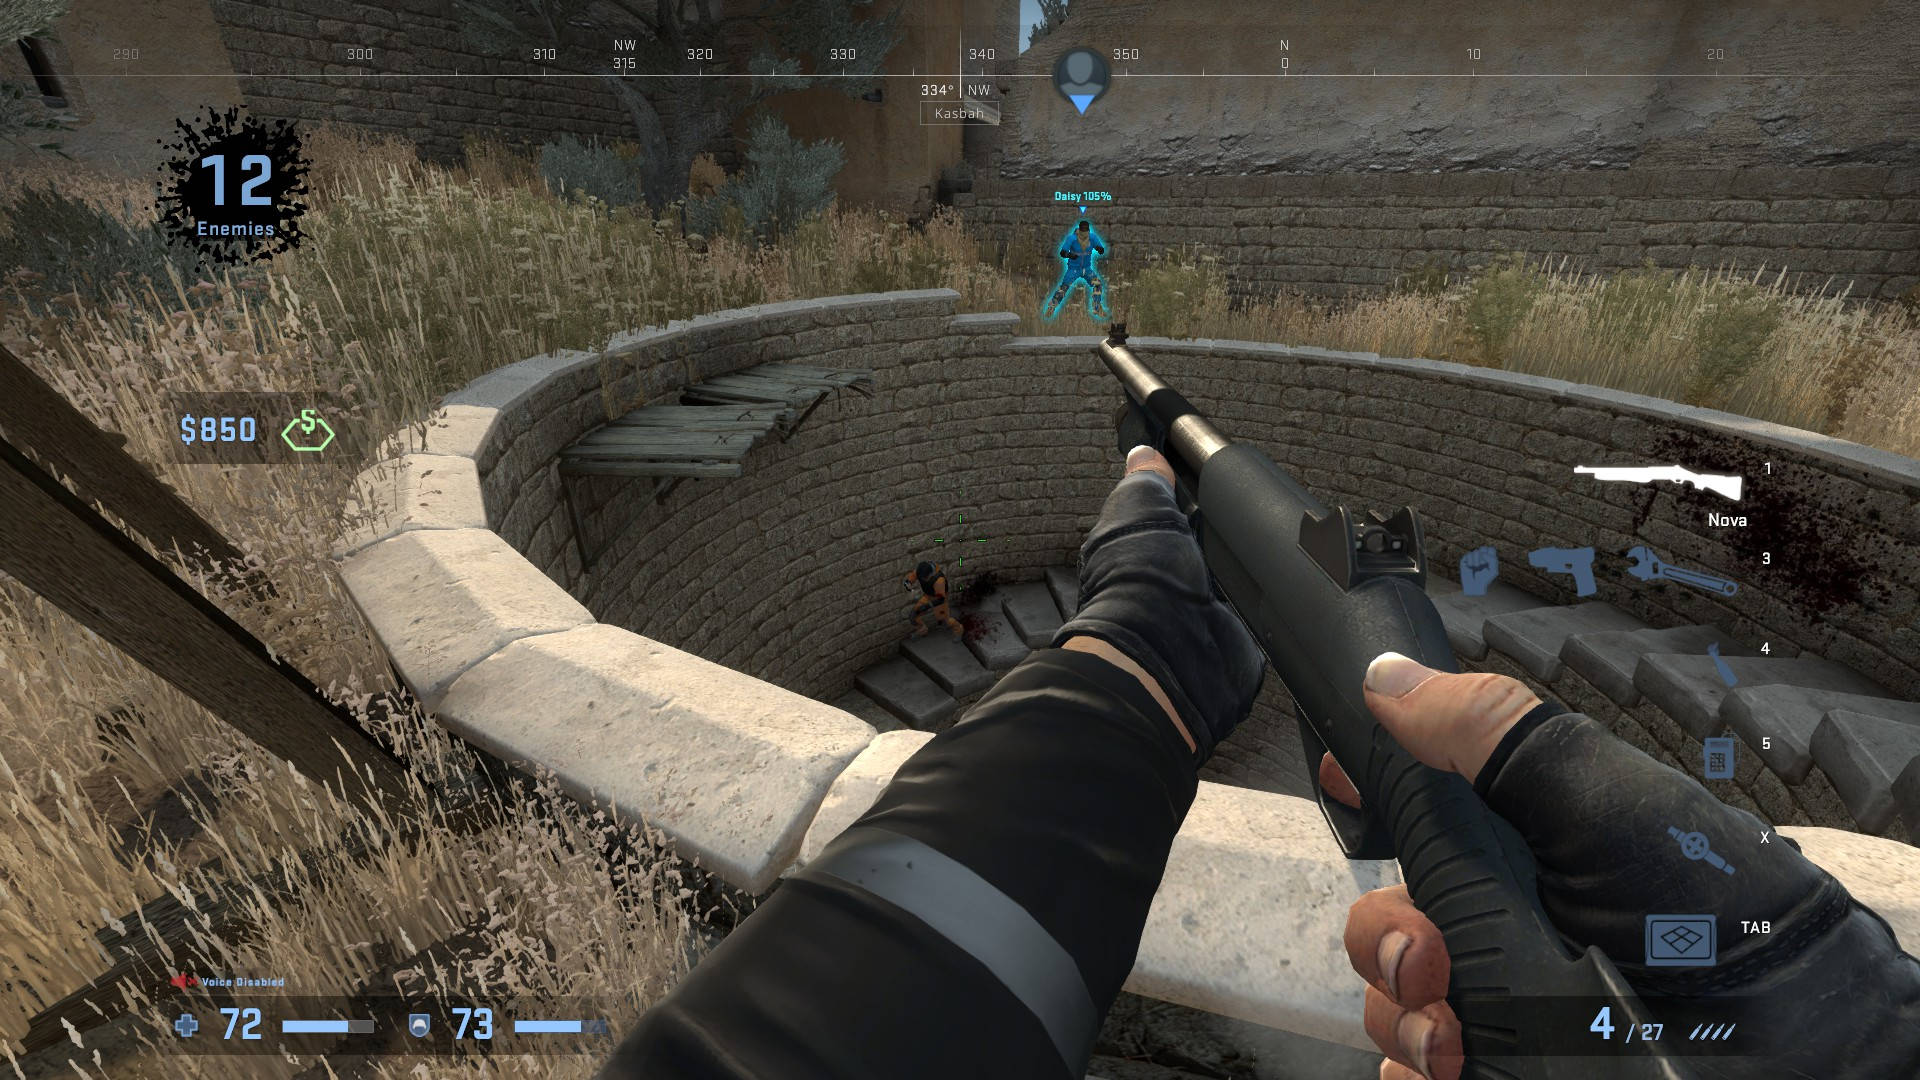 sSpillere af Counter-Strike: Global Offensive oplever konsol-lignende grafik på PC-platforme. Wallpaper